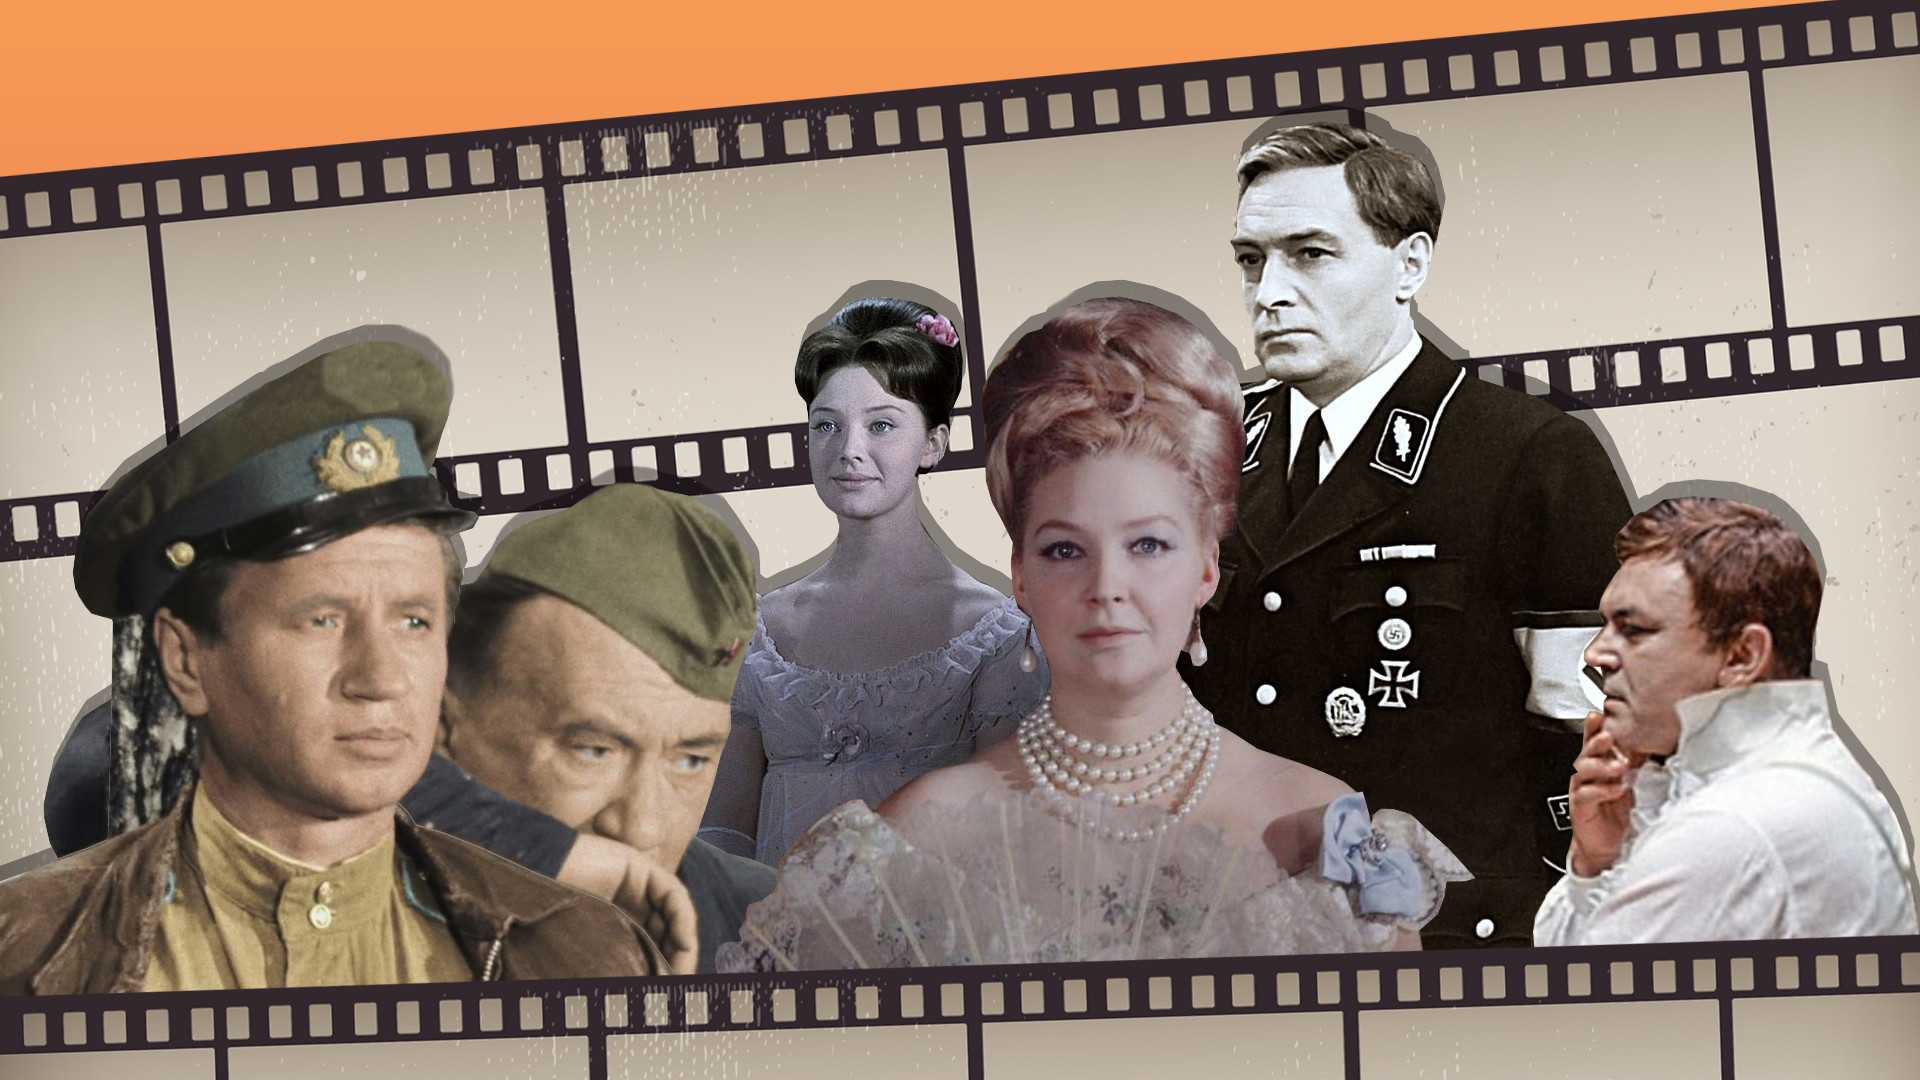 33 российских военных фильма – топ лучших про войну